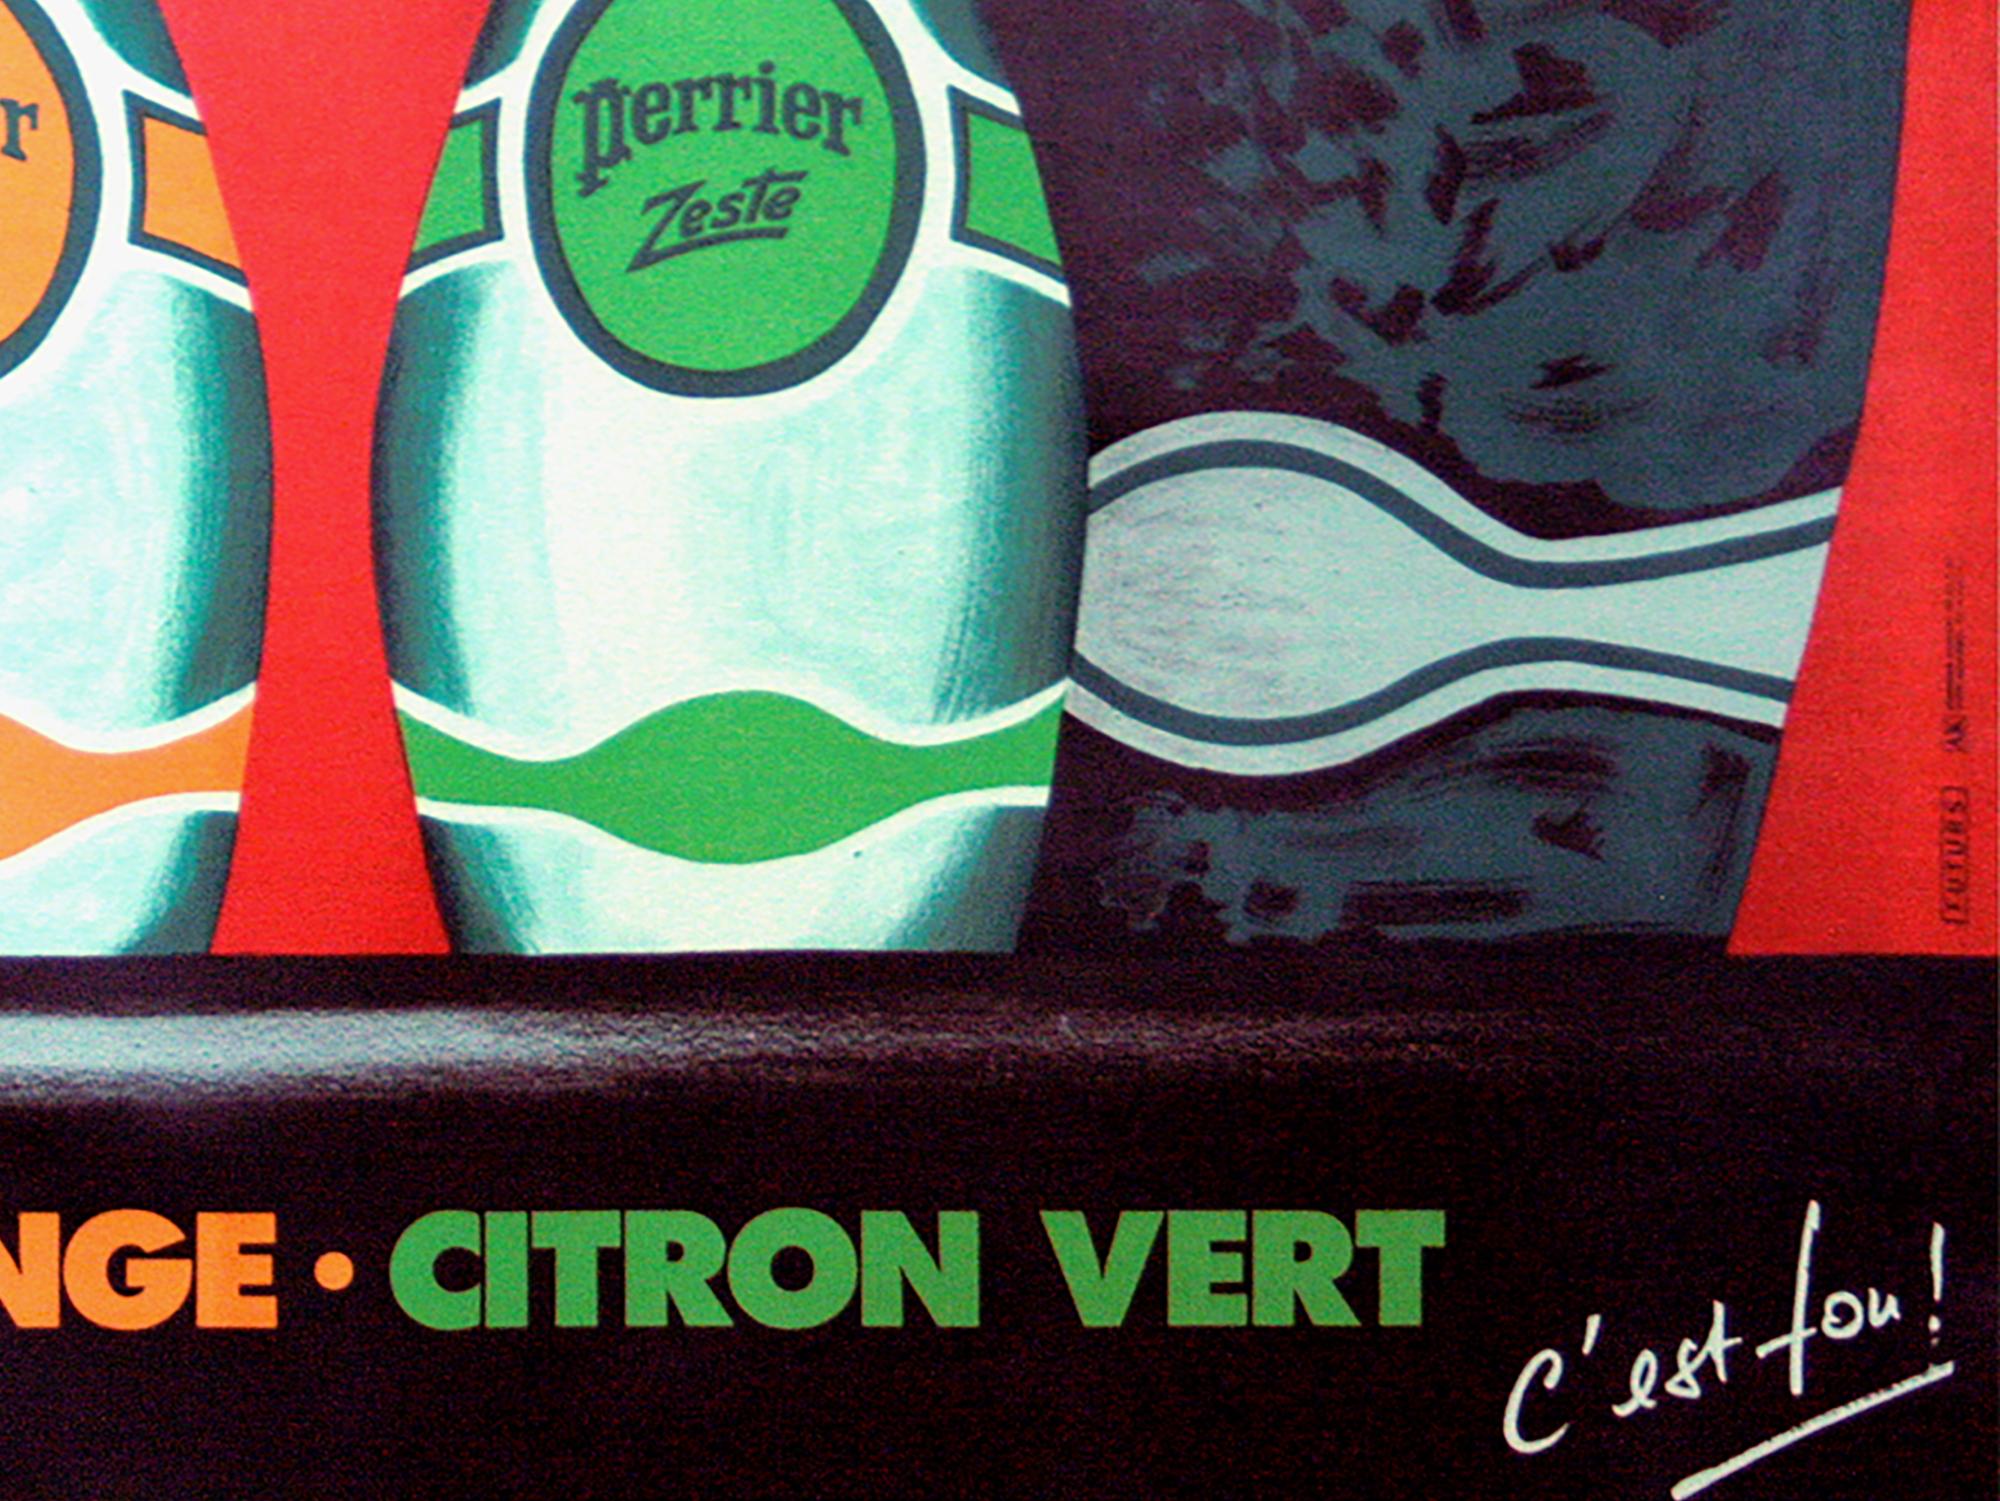 20th Century PERRIER ZESTE, 1987  Vintage French Beverage, Drink Advertising Poster, VILLEMOT